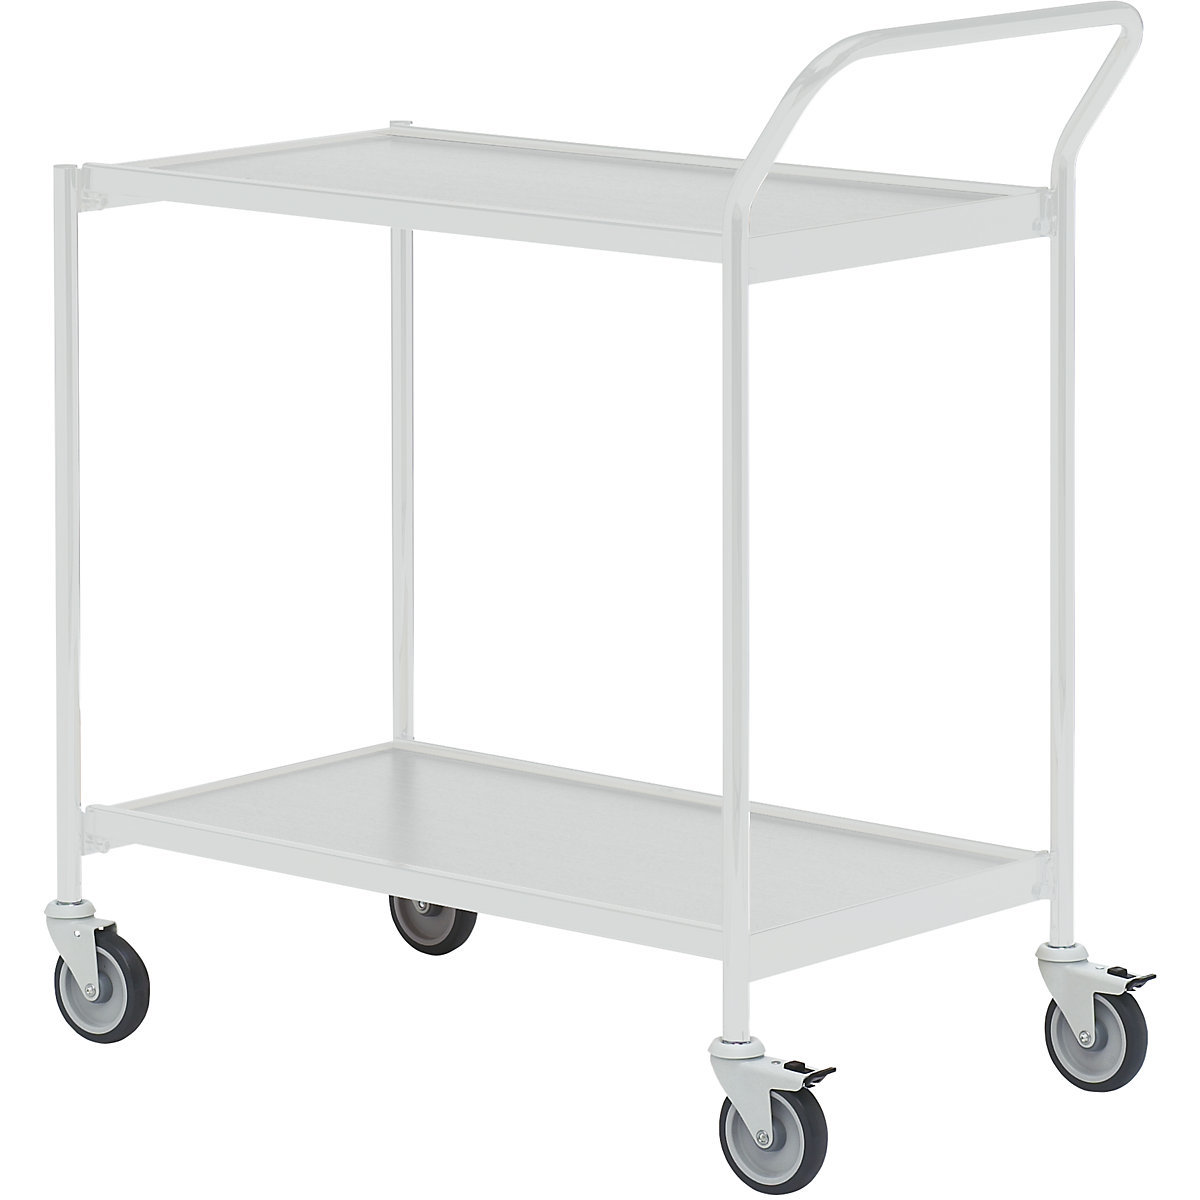 Stolový vozík – HelgeNyberg, 2 etáže, d x š 1000 x 420 mm, šedá / šedá, od 5 ks-11